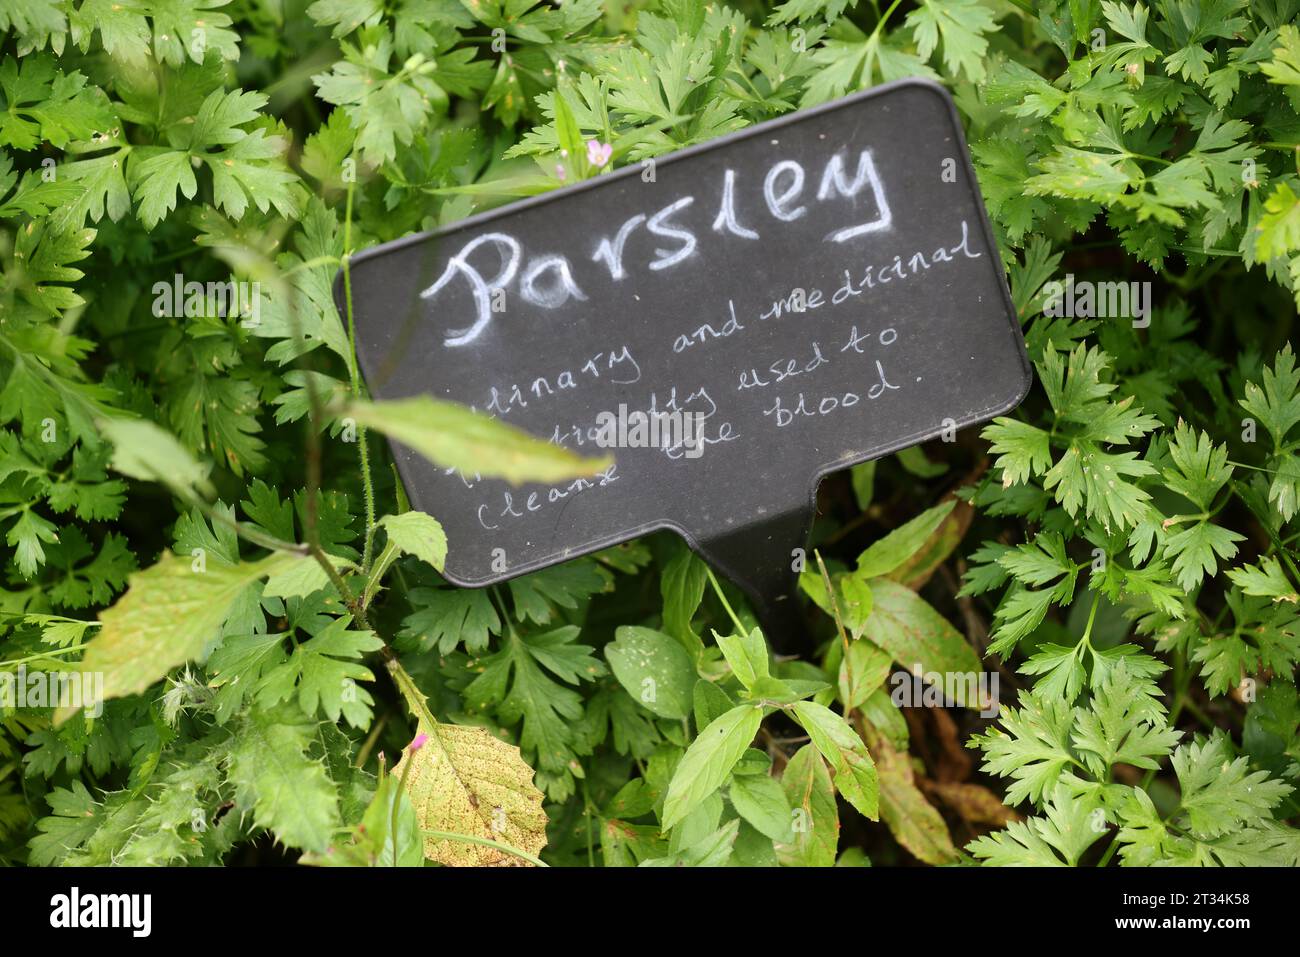 Una selezione di etichette di piante raffigurate accanto alle piante in crescita al Weald & Downland Museum di Chichester, West Sussex, Regno Unito. Foto Stock